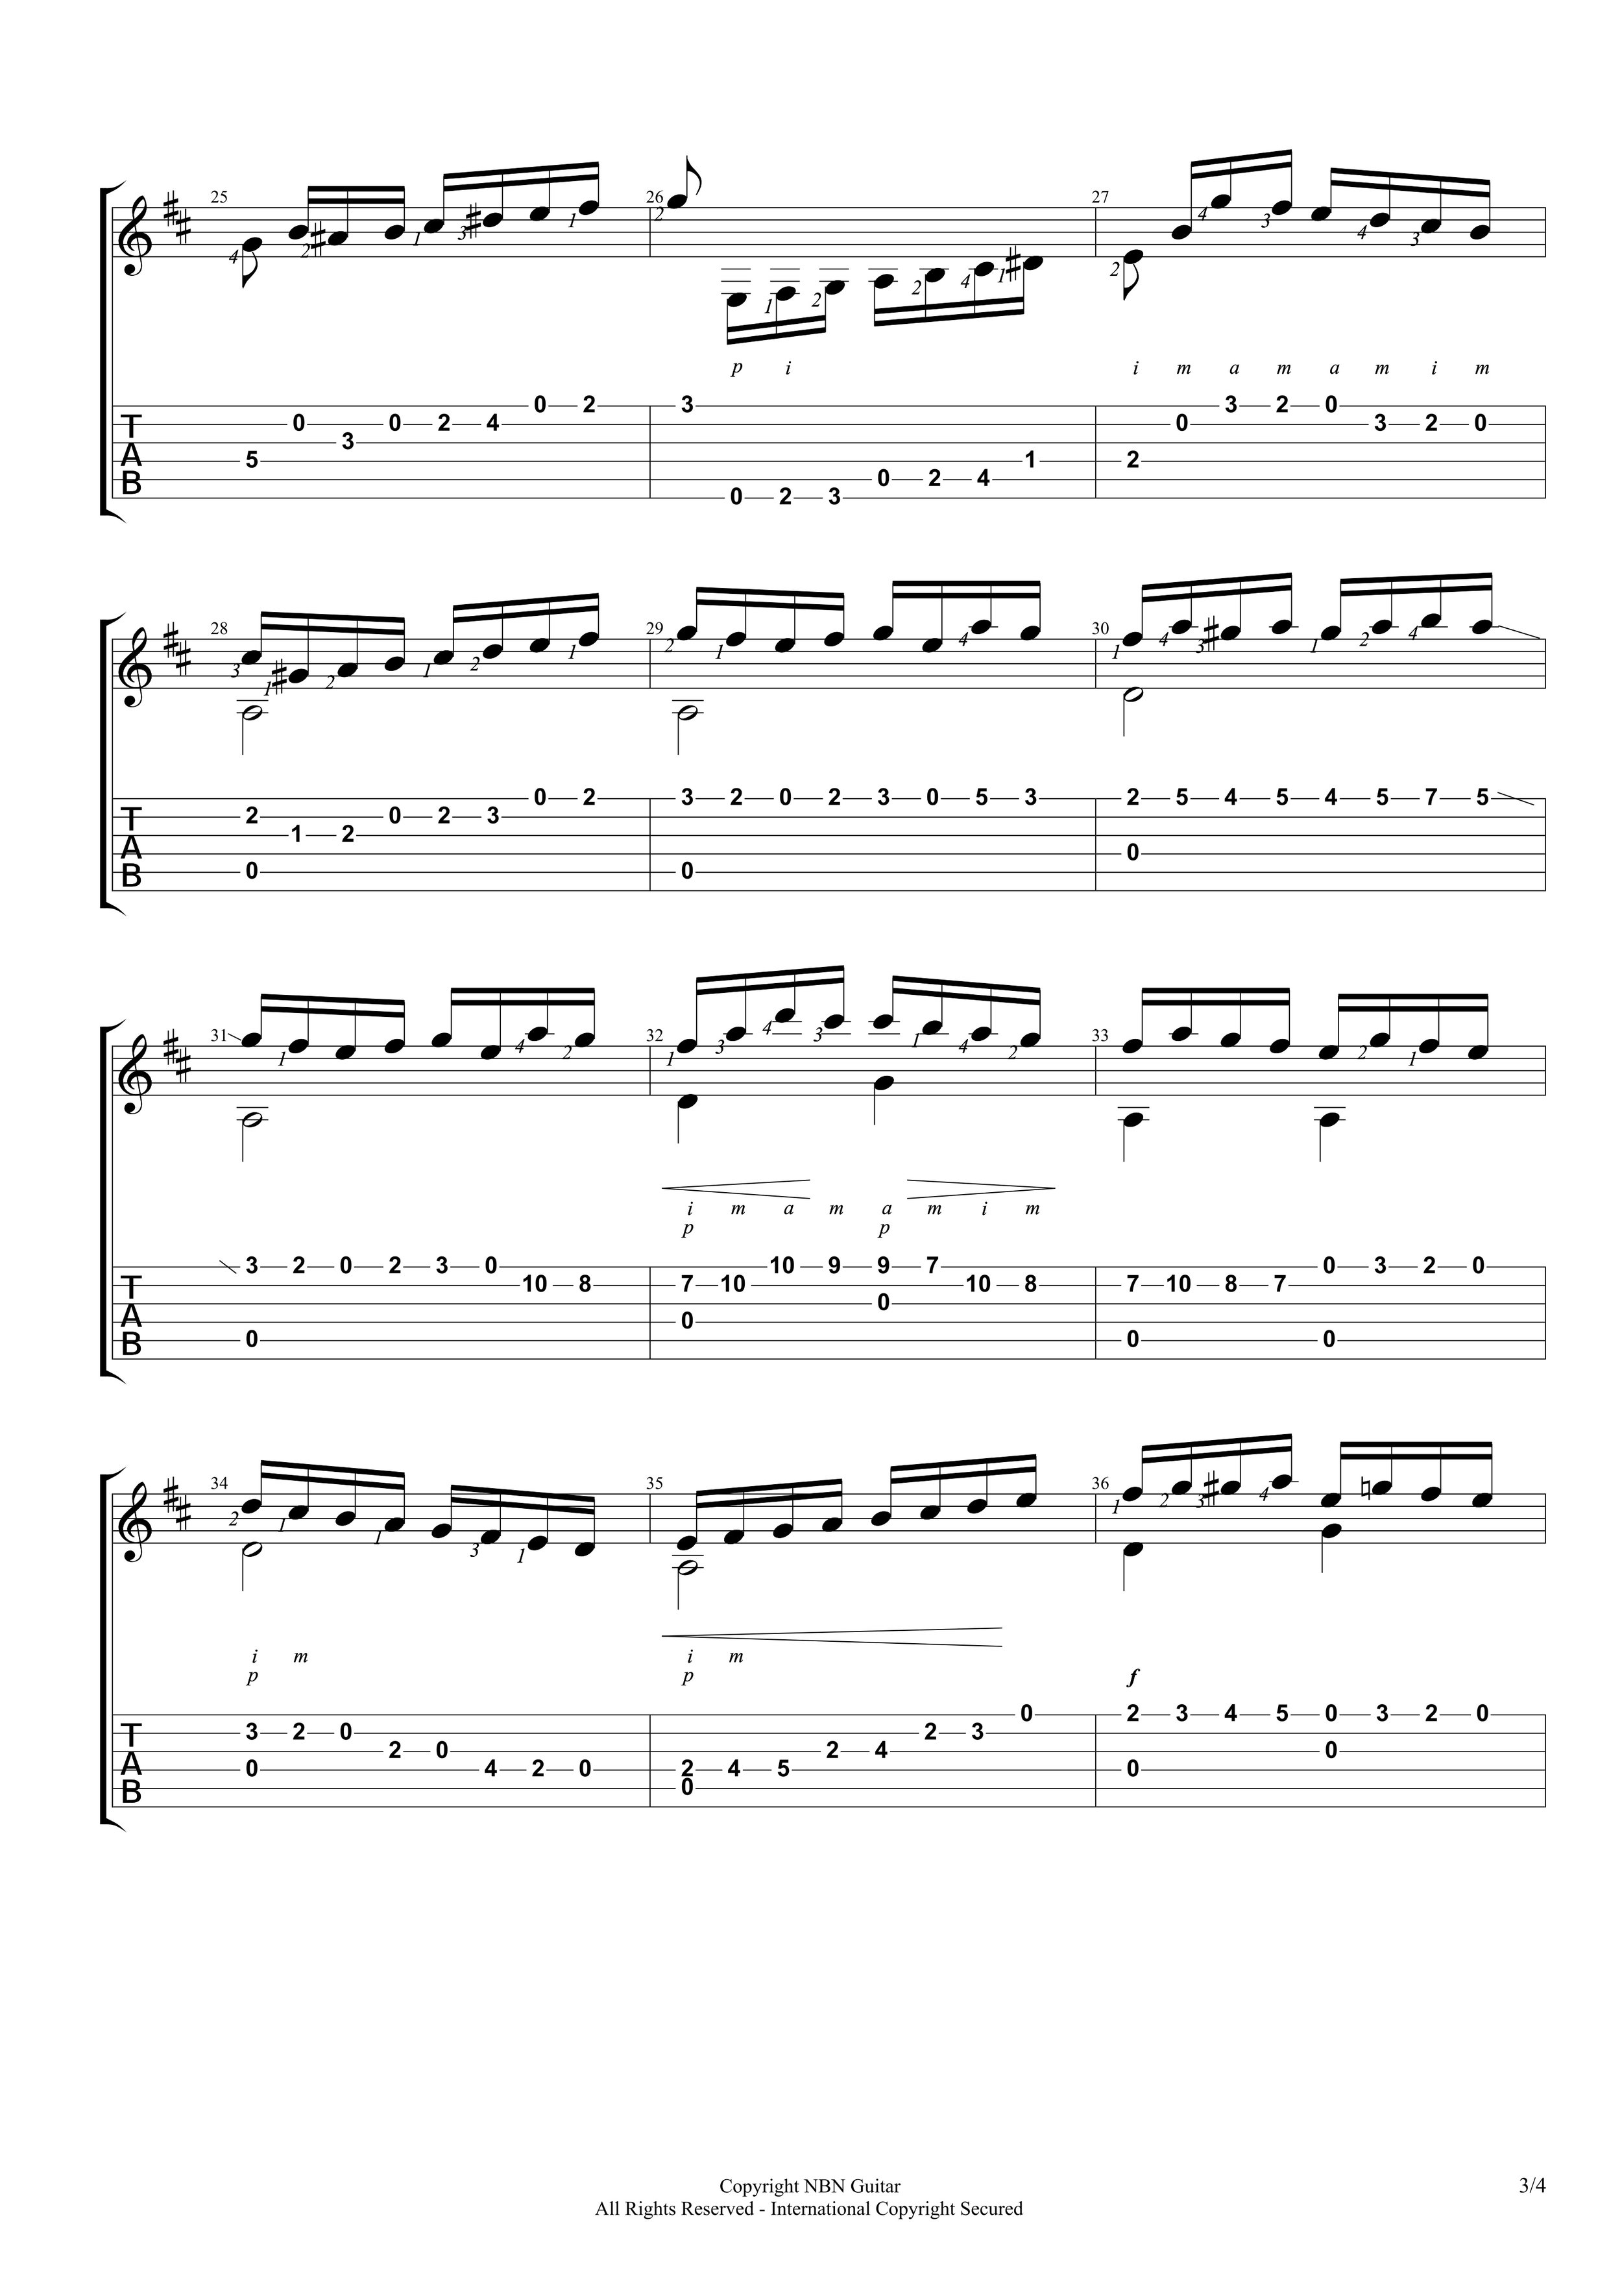 Etude No. 14, Op. 60 - Carcassi (Sheet Music & Tabs)-p5.jpg